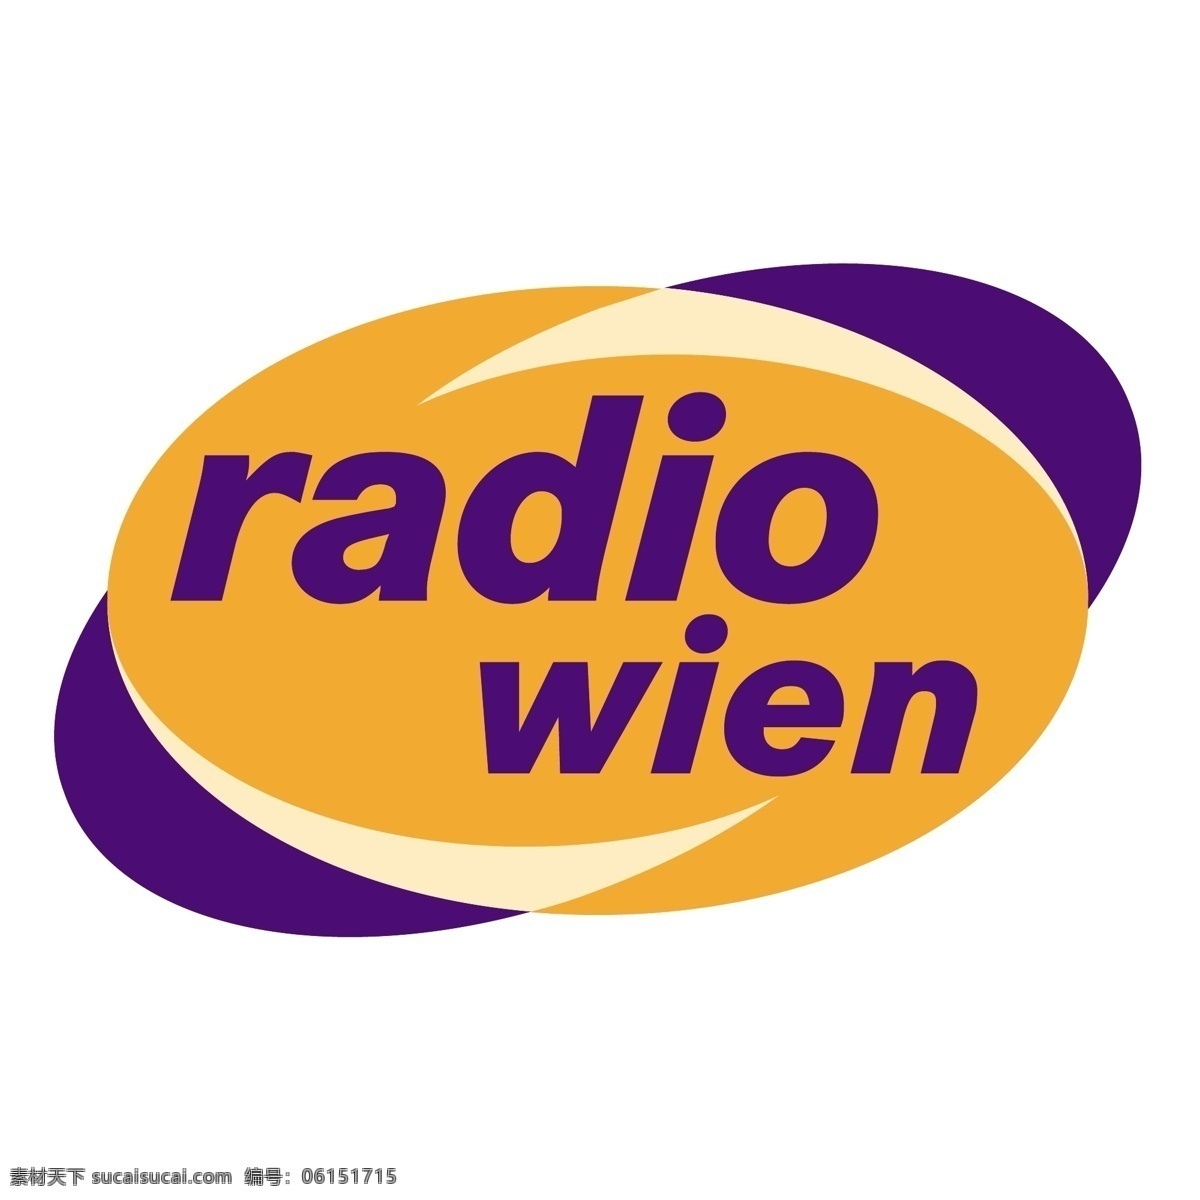 维也纳电台 矢量标志下载 免费矢量标识 商标 品牌标识 标识 矢量 免费 品牌 公司 白色